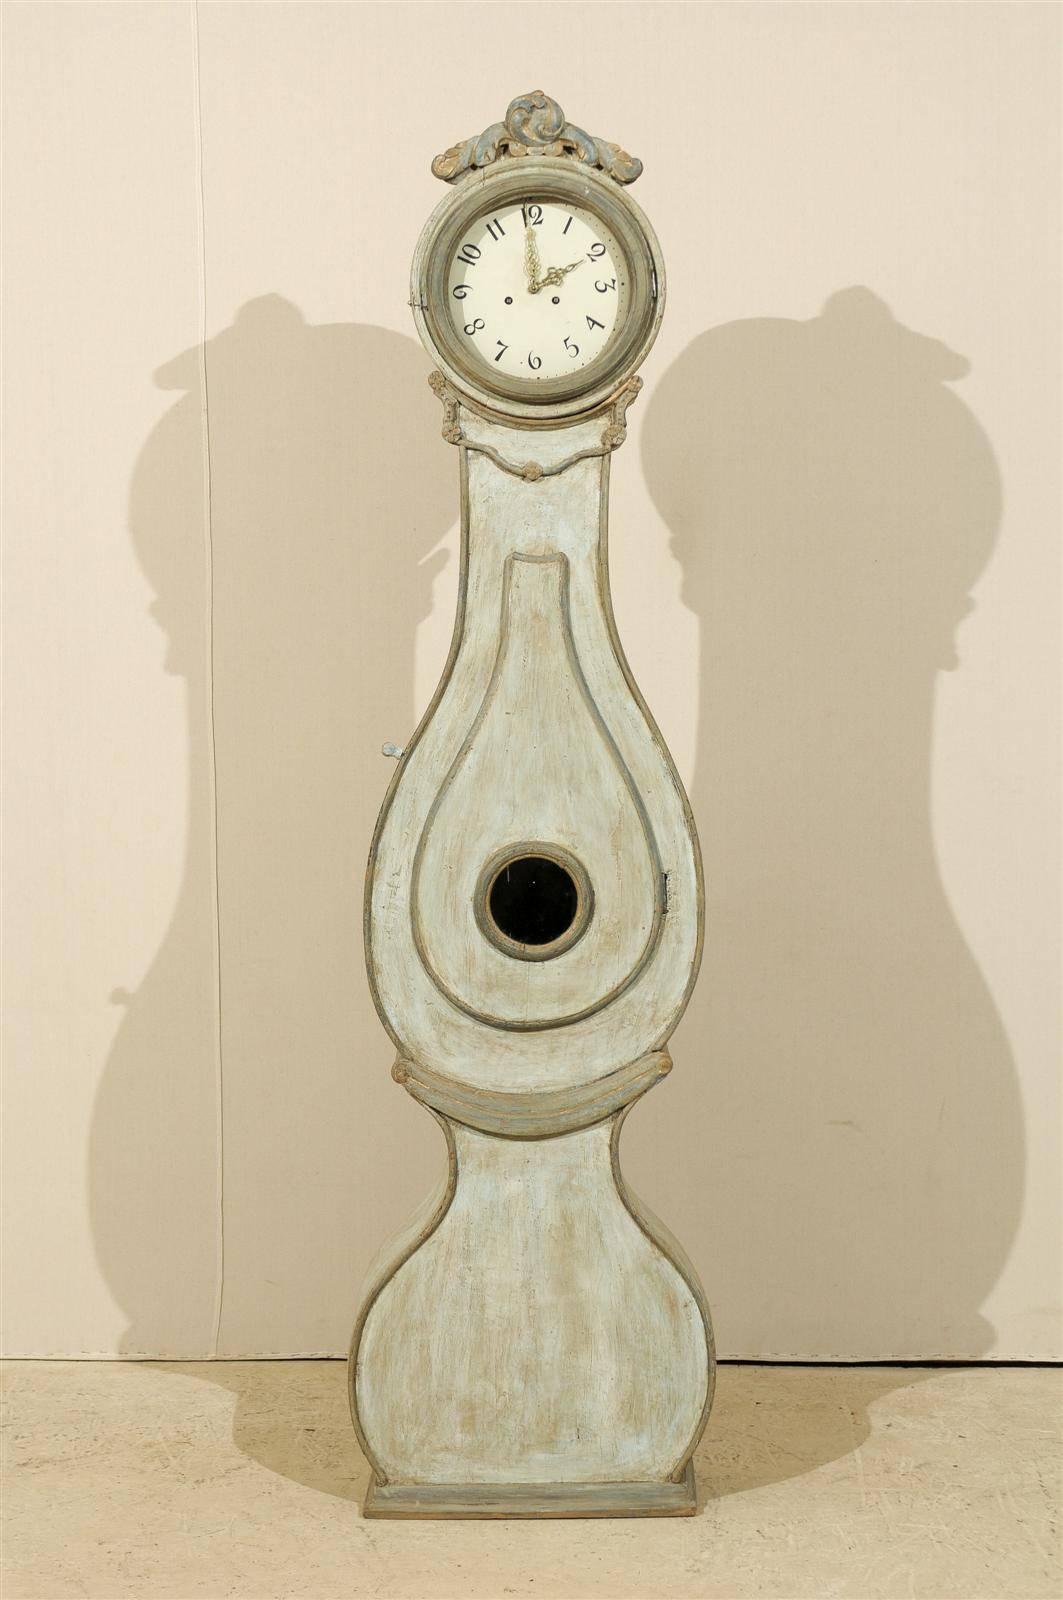 Eine schwedische Standuhr aus dem 19. Jahrhundert. Diese schwedische Fryksdahl-Uhr aus dem 19. Jahrhundert ist an der Spitze mit einem stilisierten Akanthusblattkranz verziert, der dezente Spuren von Vergoldung aufweist. Der Hals ist mit Rosetten